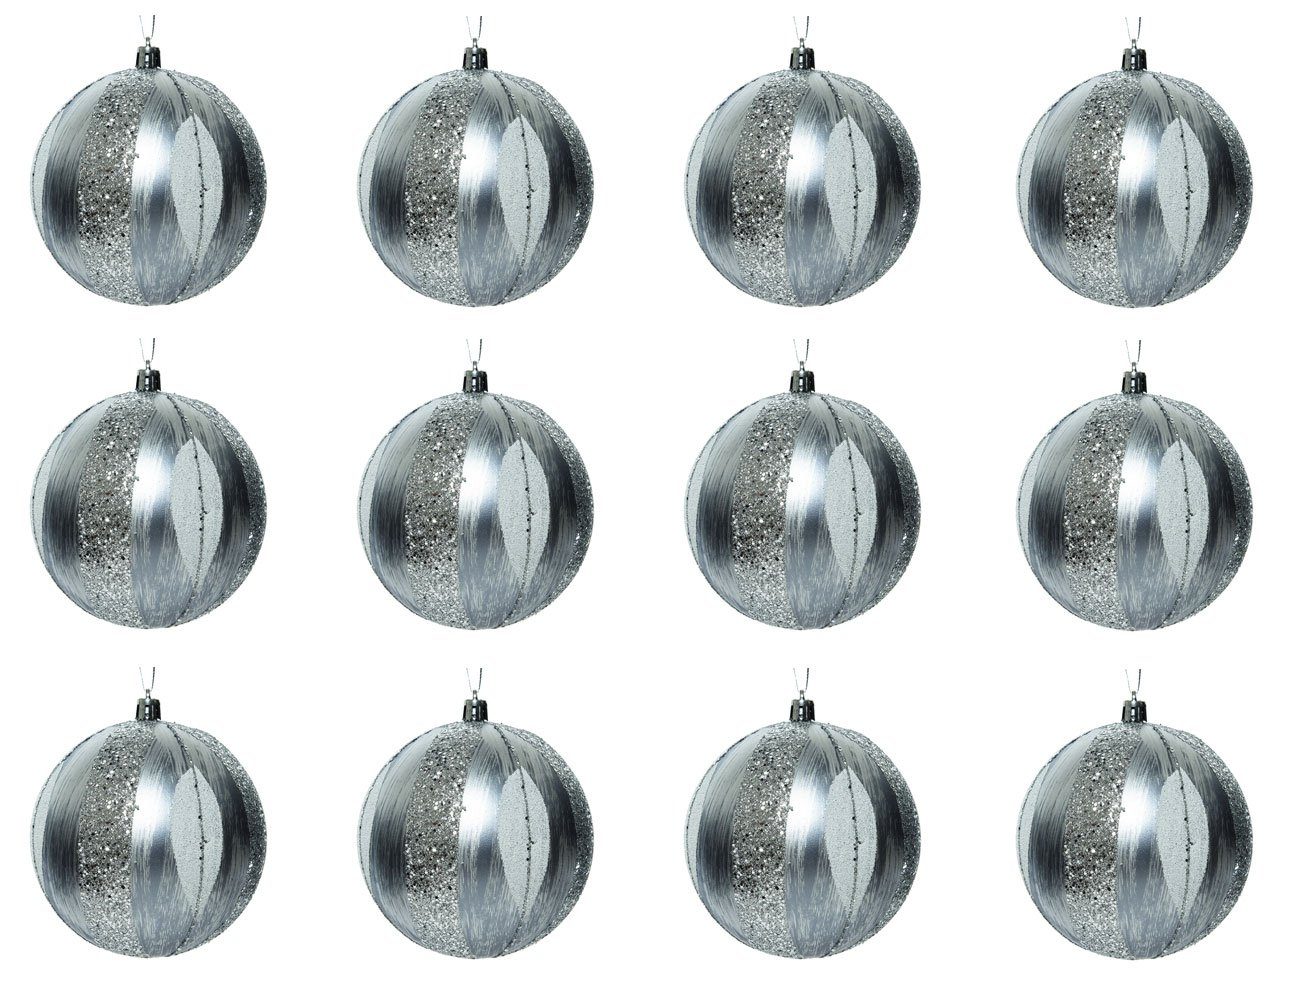 Decoris season decorations Christbaumschmuck, Weihnachtskugeln Kunststoff mit Motiv 10cm silber, 12er Set